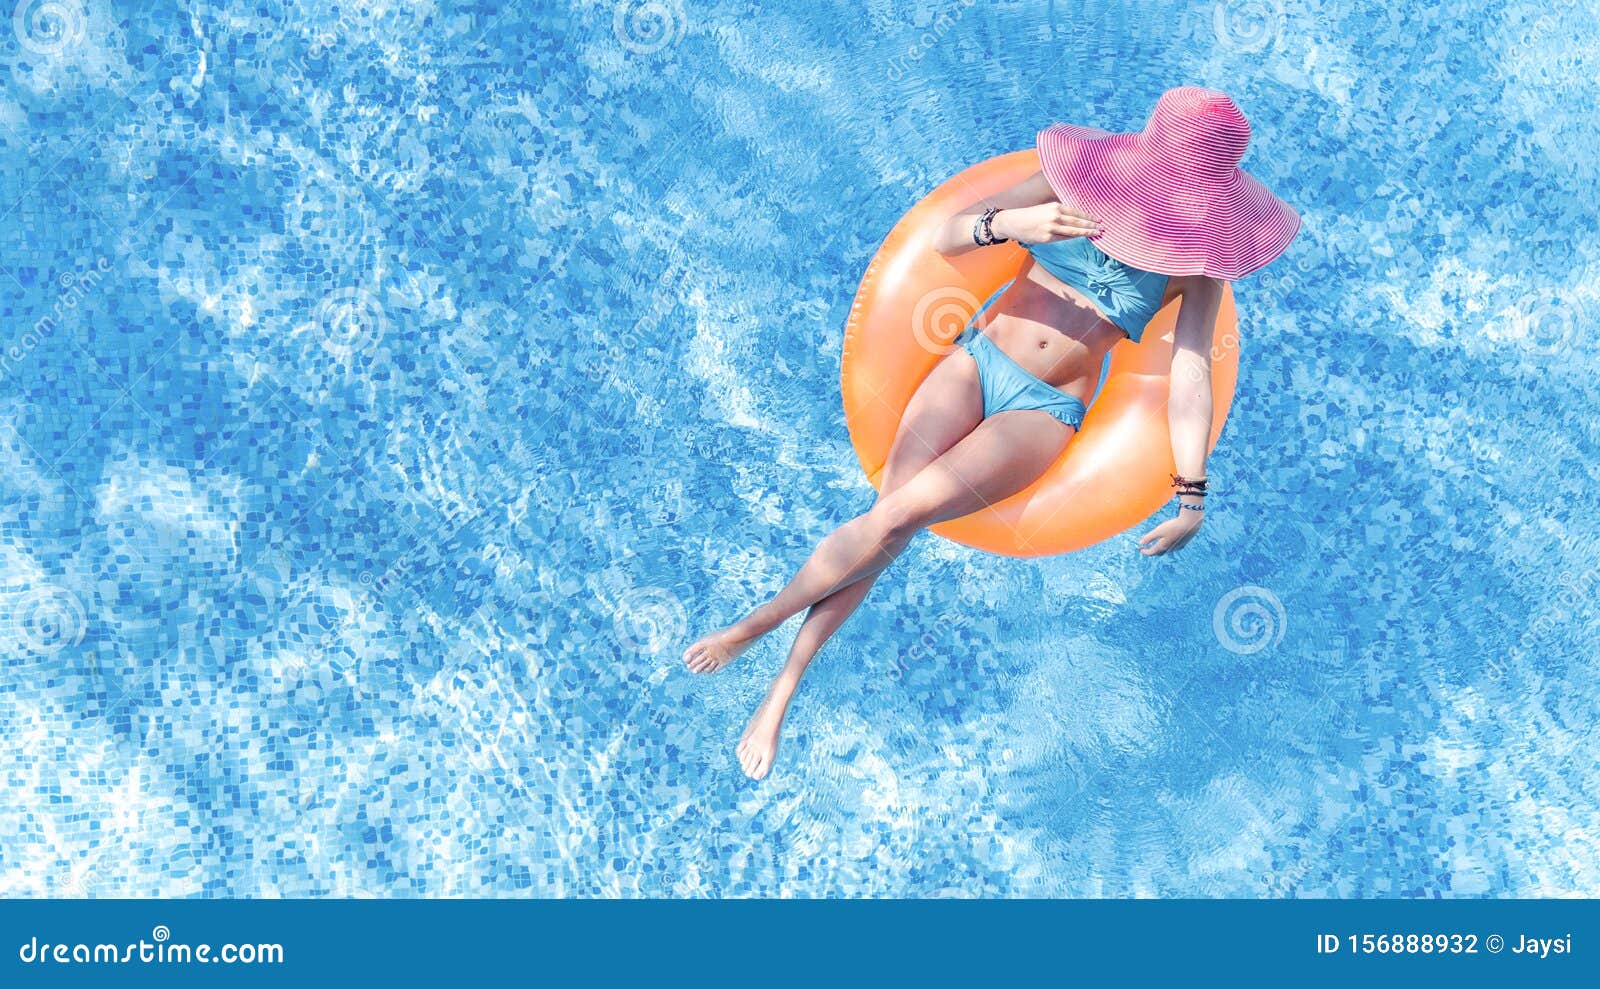 戴帽子的美女 从上面俯瞰泳池 穿比基尼的年轻女孩在充气戒指上放松库存照片 图片包括有 156